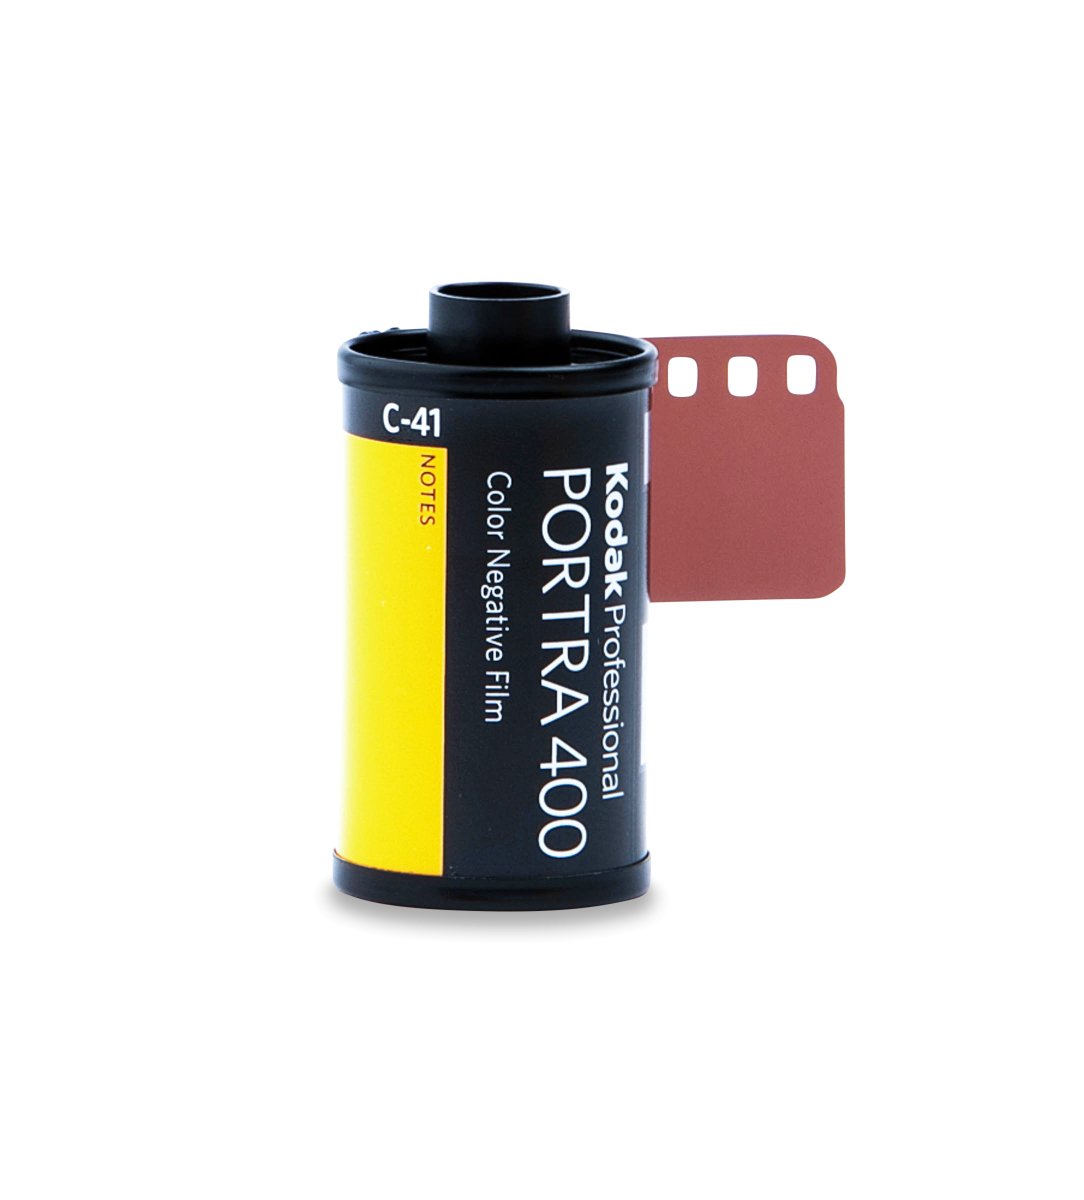 Kodak Portra 400 - 35mm - 36 Exposure - Single Roll - Rewind Photo Lab - Kodak